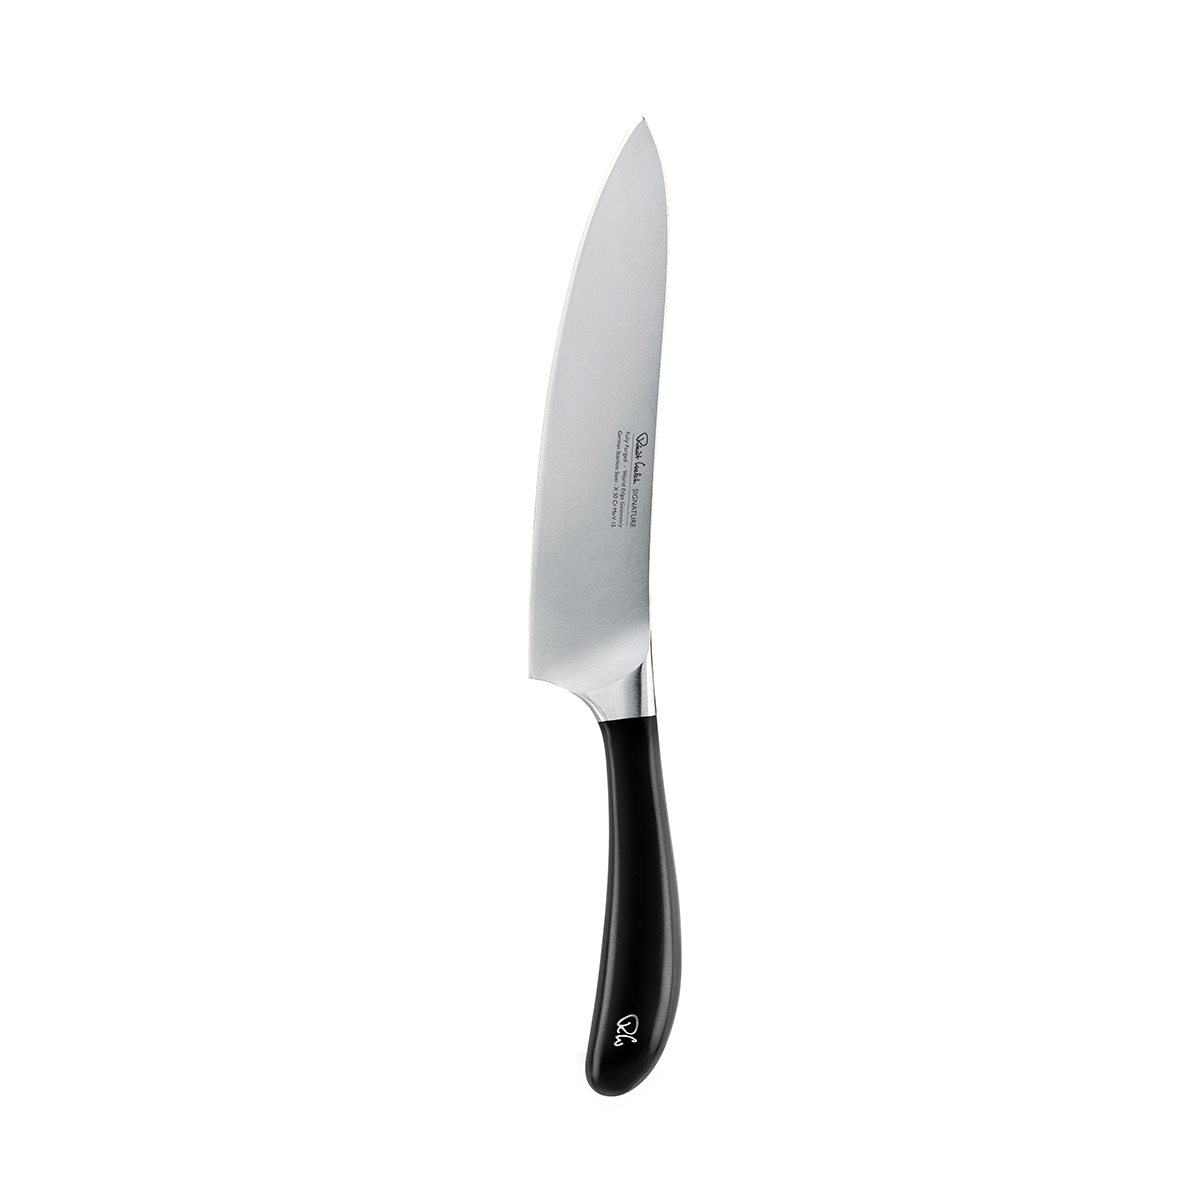 Nóż szefa kuchni SIGNATURE 18 cm / Robert Welch